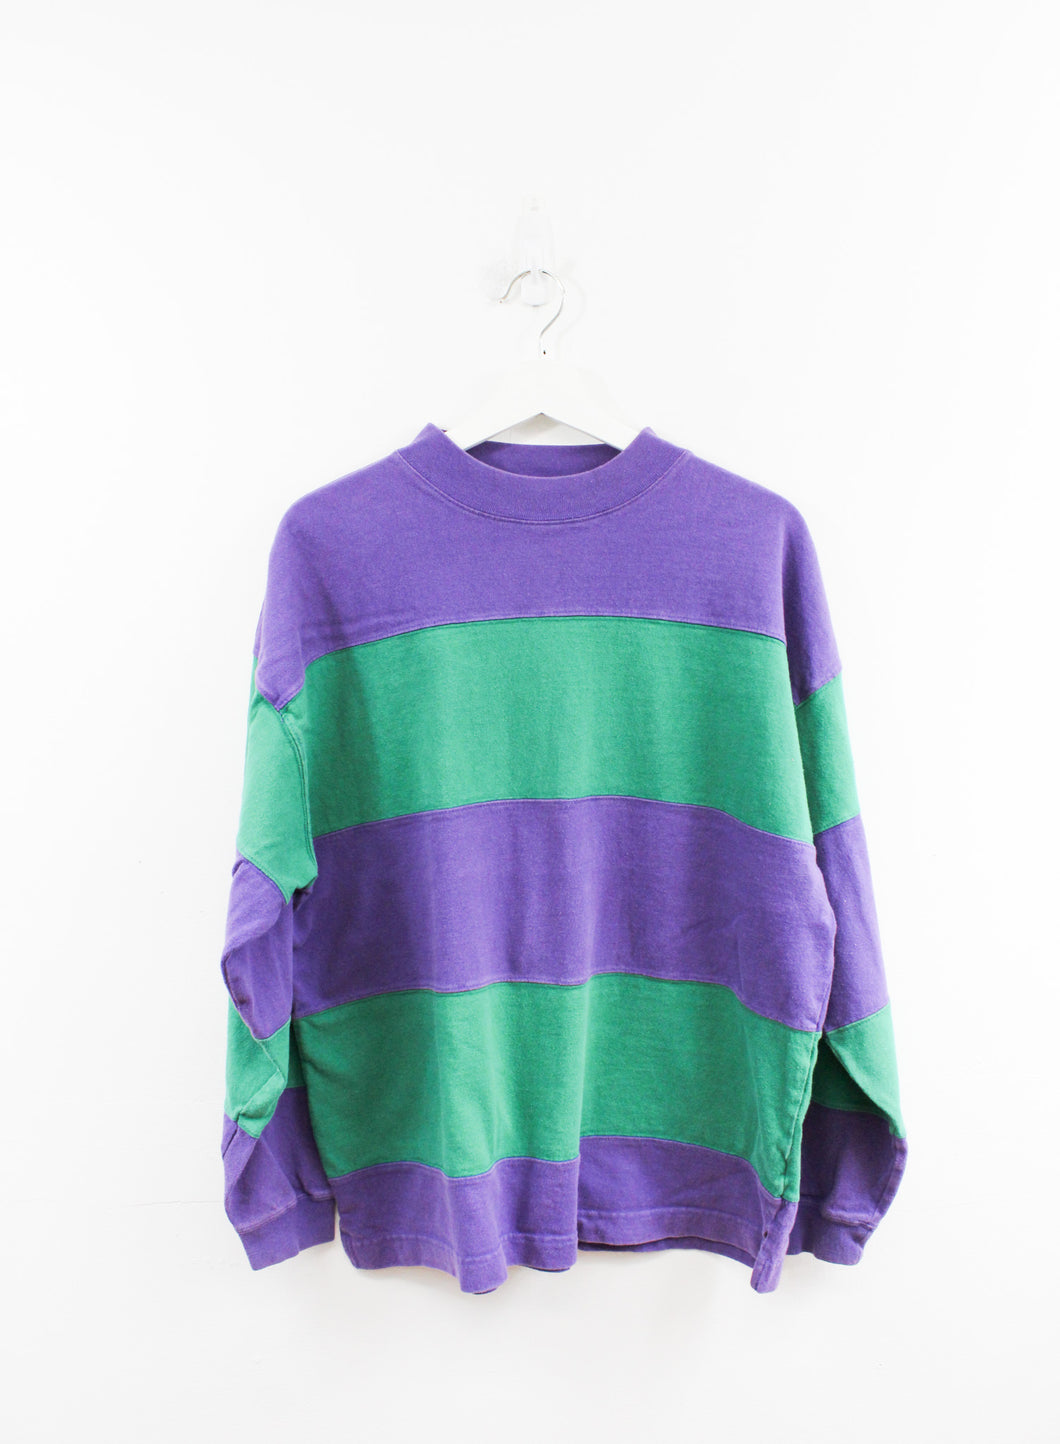 Vintage 90s GAP Stripped Sweatshirt